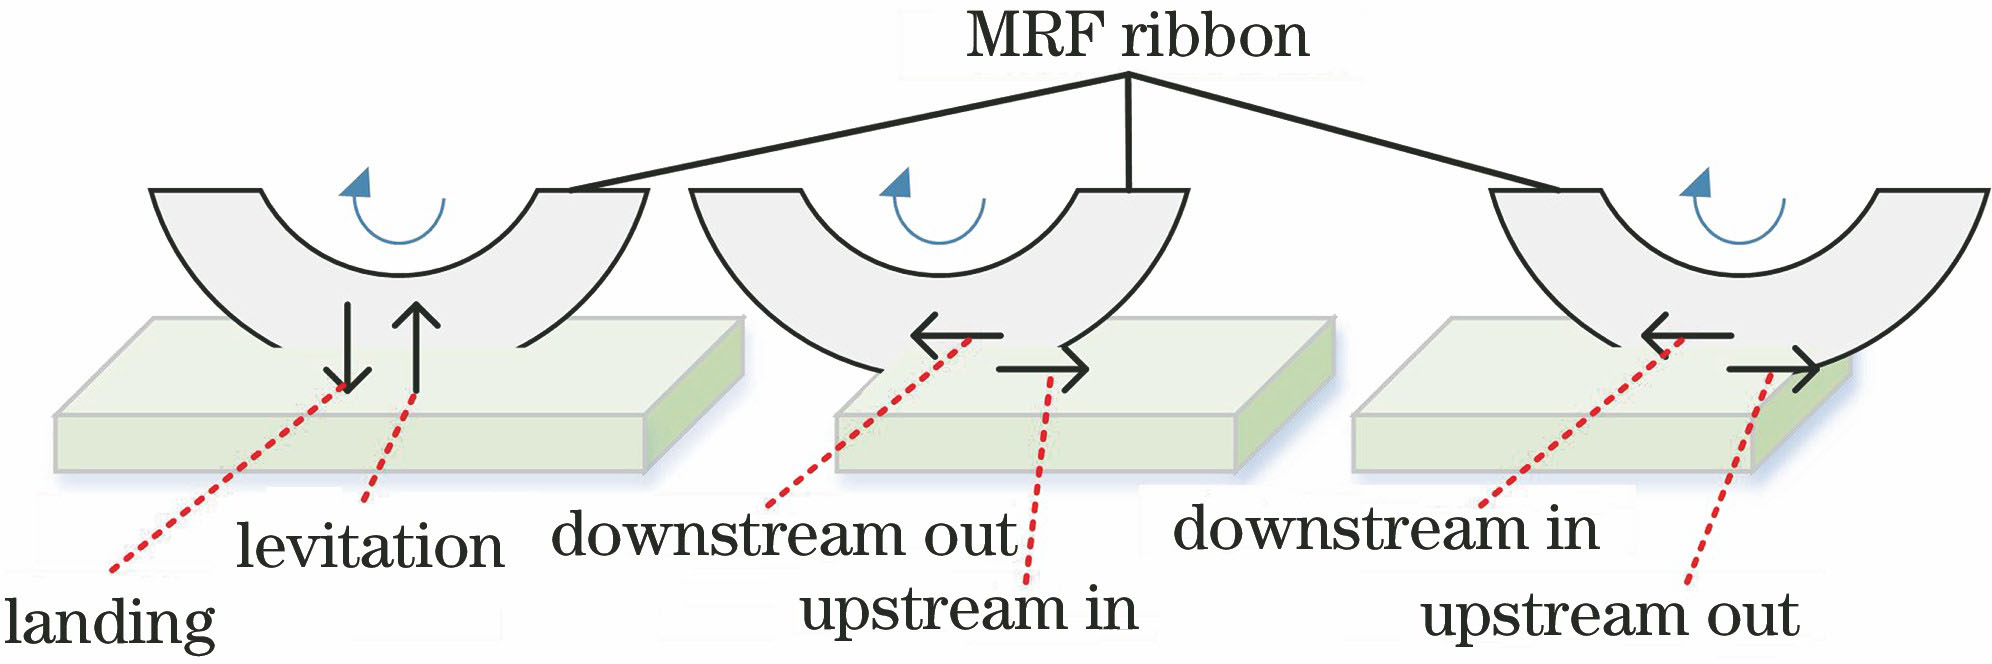 MRF flow transient working condition diagram